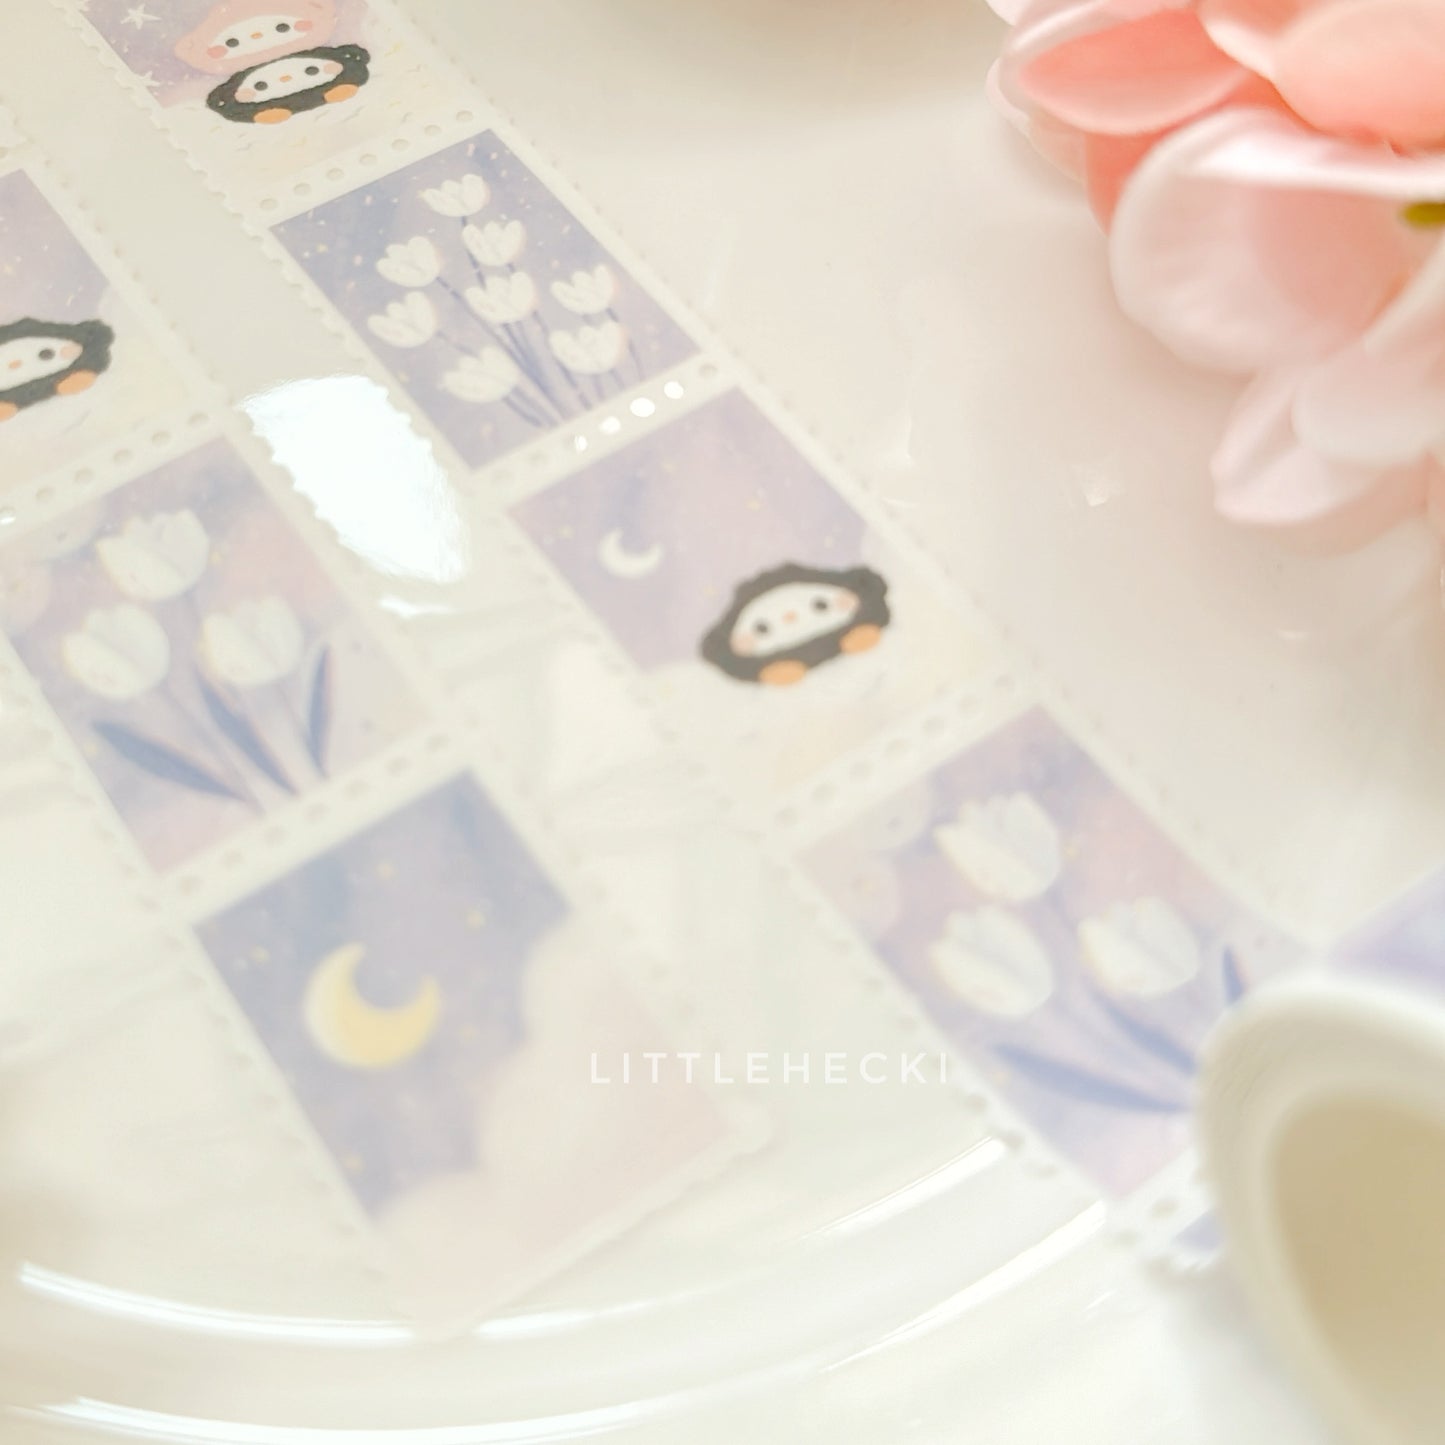 Midnight Florals Stamp Washi Tape